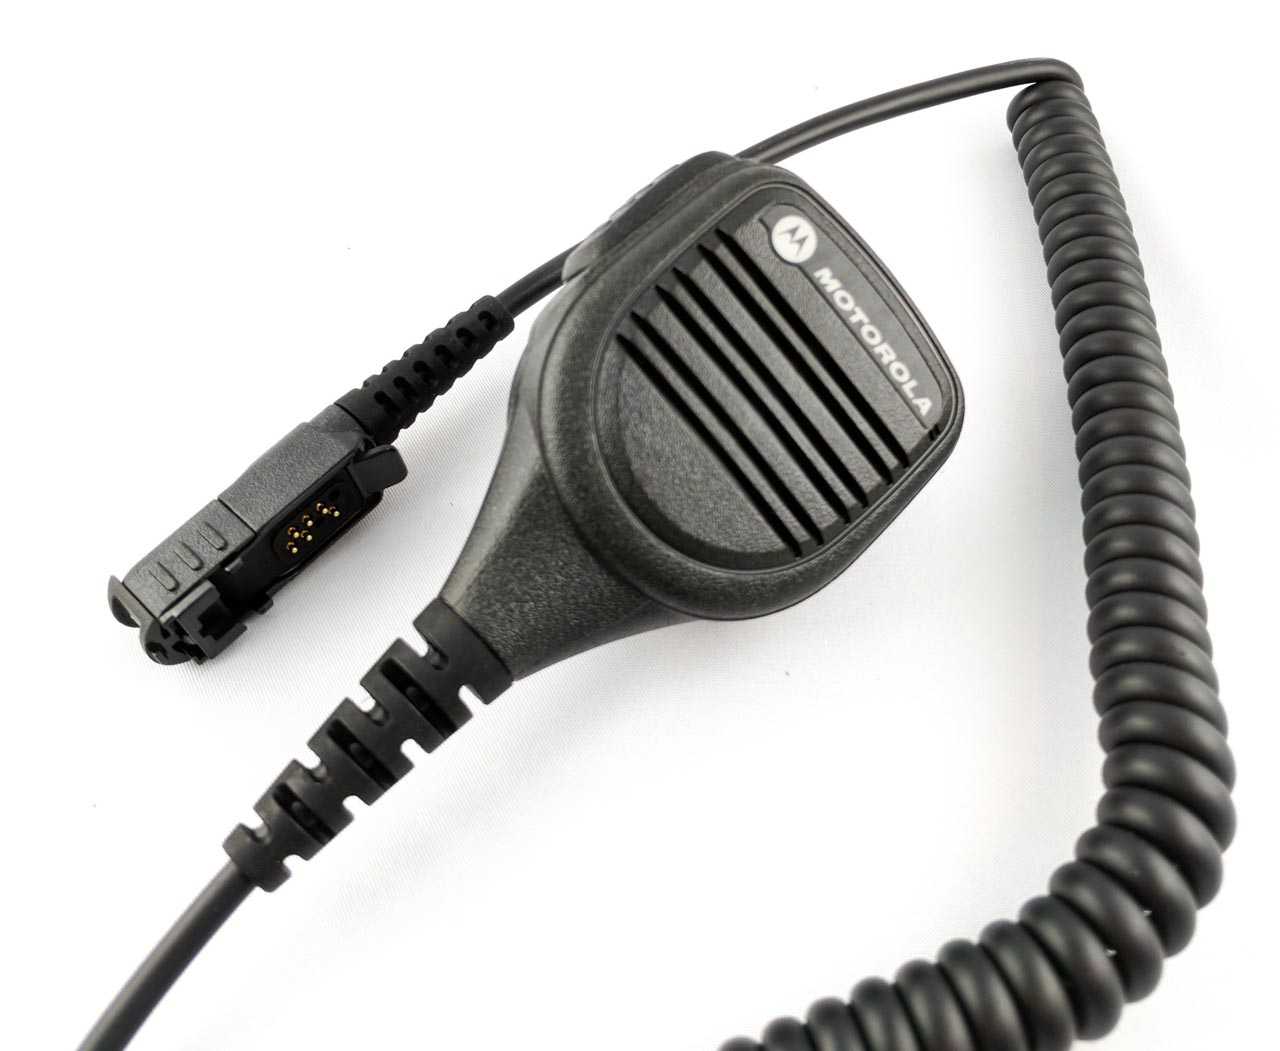 Motorola Abgesetztes Lautsprechermikrofon IP57 mit Geräuschunterdrückung PMMN4075A